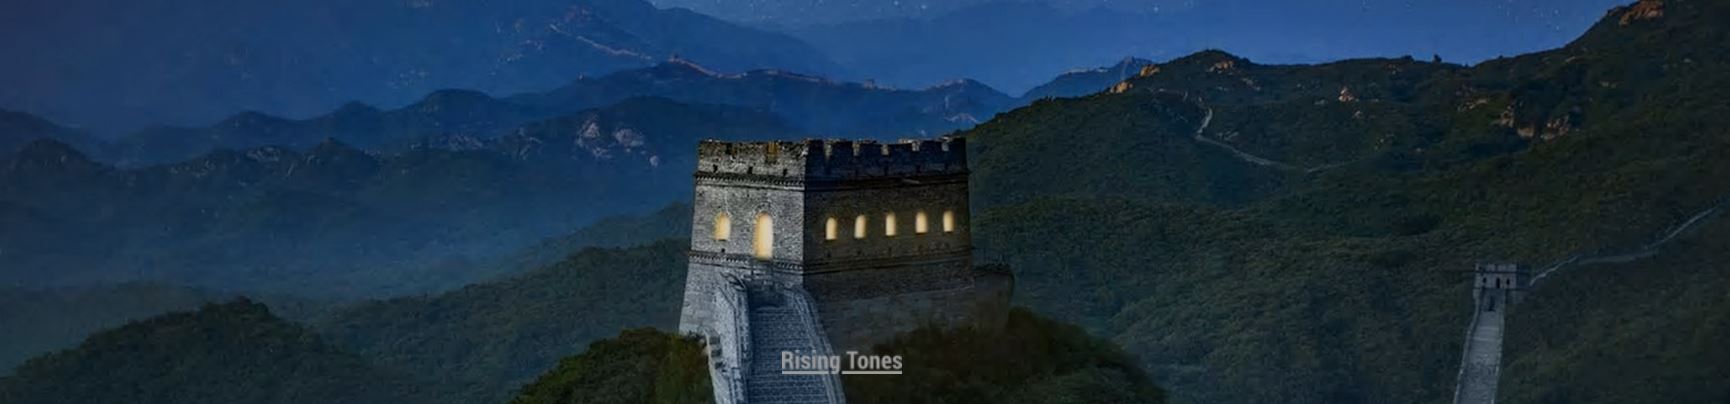 주거공간으로 변모한 만리장성 성탑. 출처:sixthtone.com